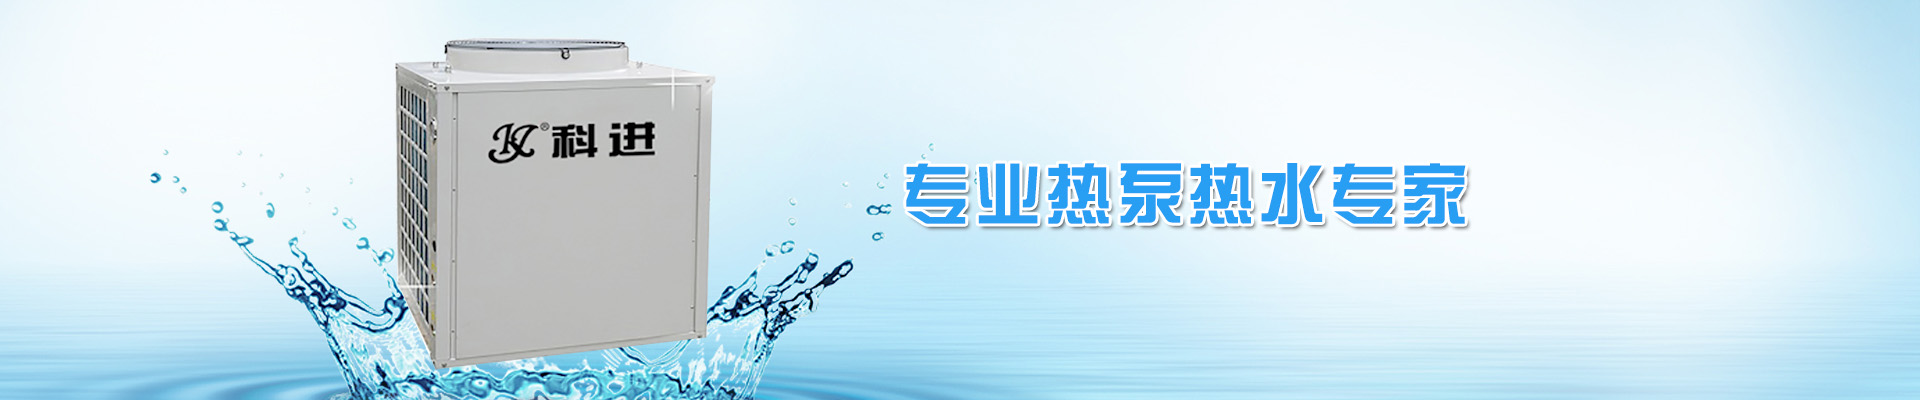 东莞全程综合水处理器现货让利巨大优惠